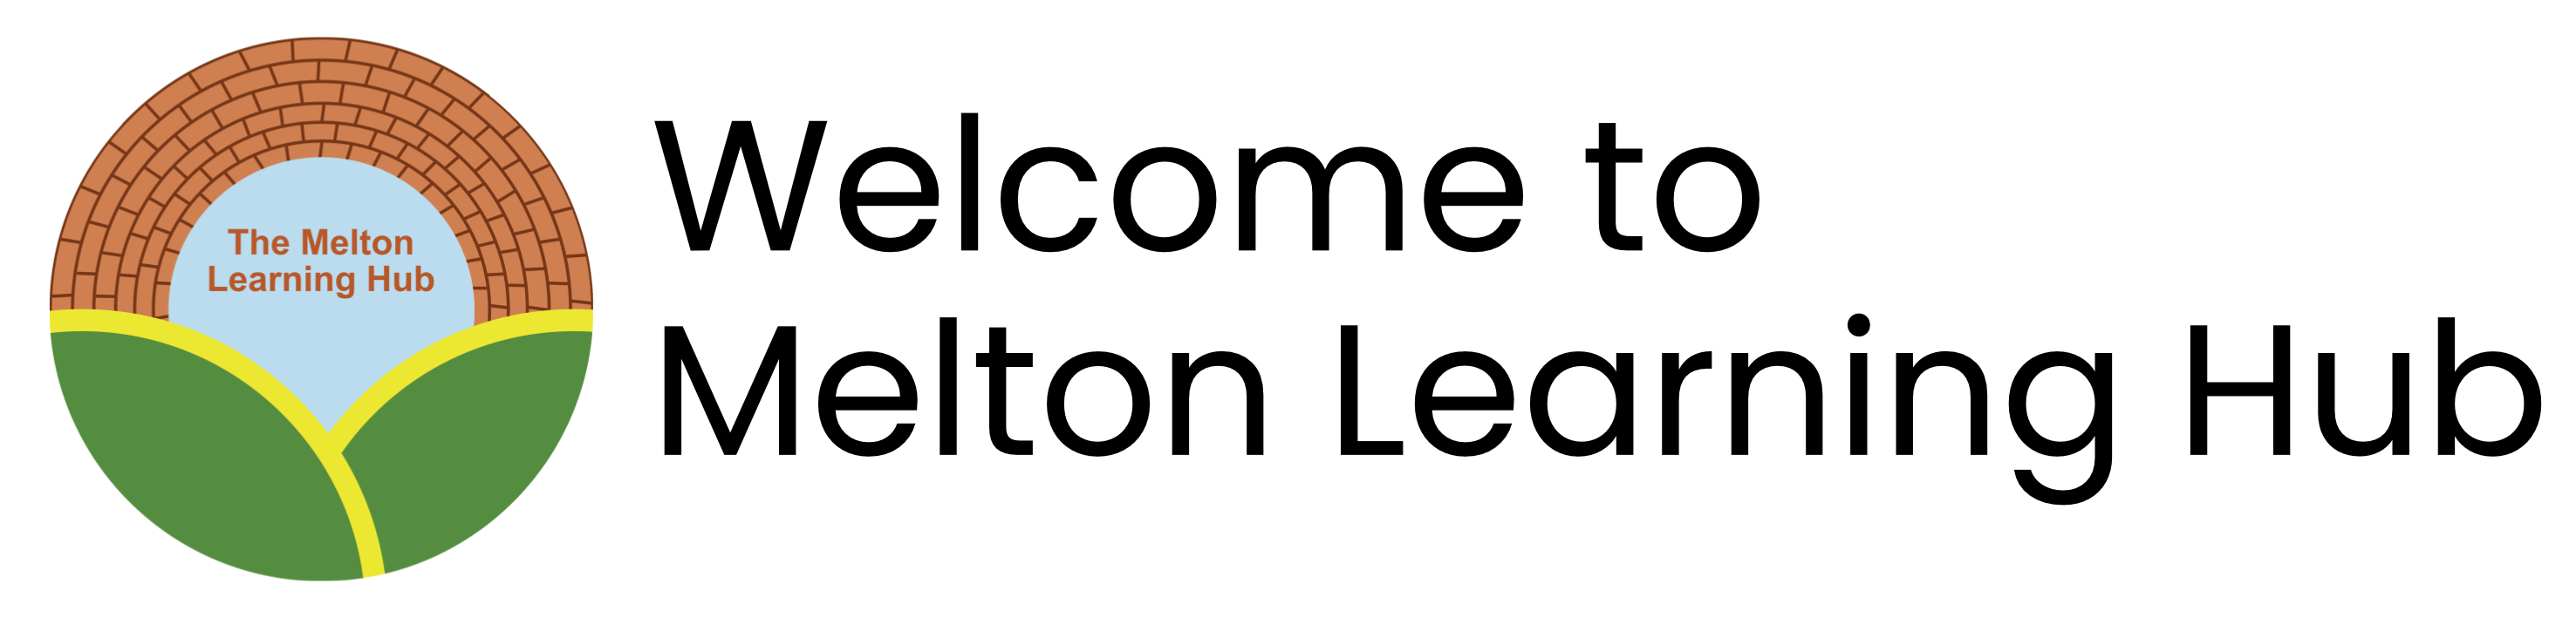 Melton Learning Hub